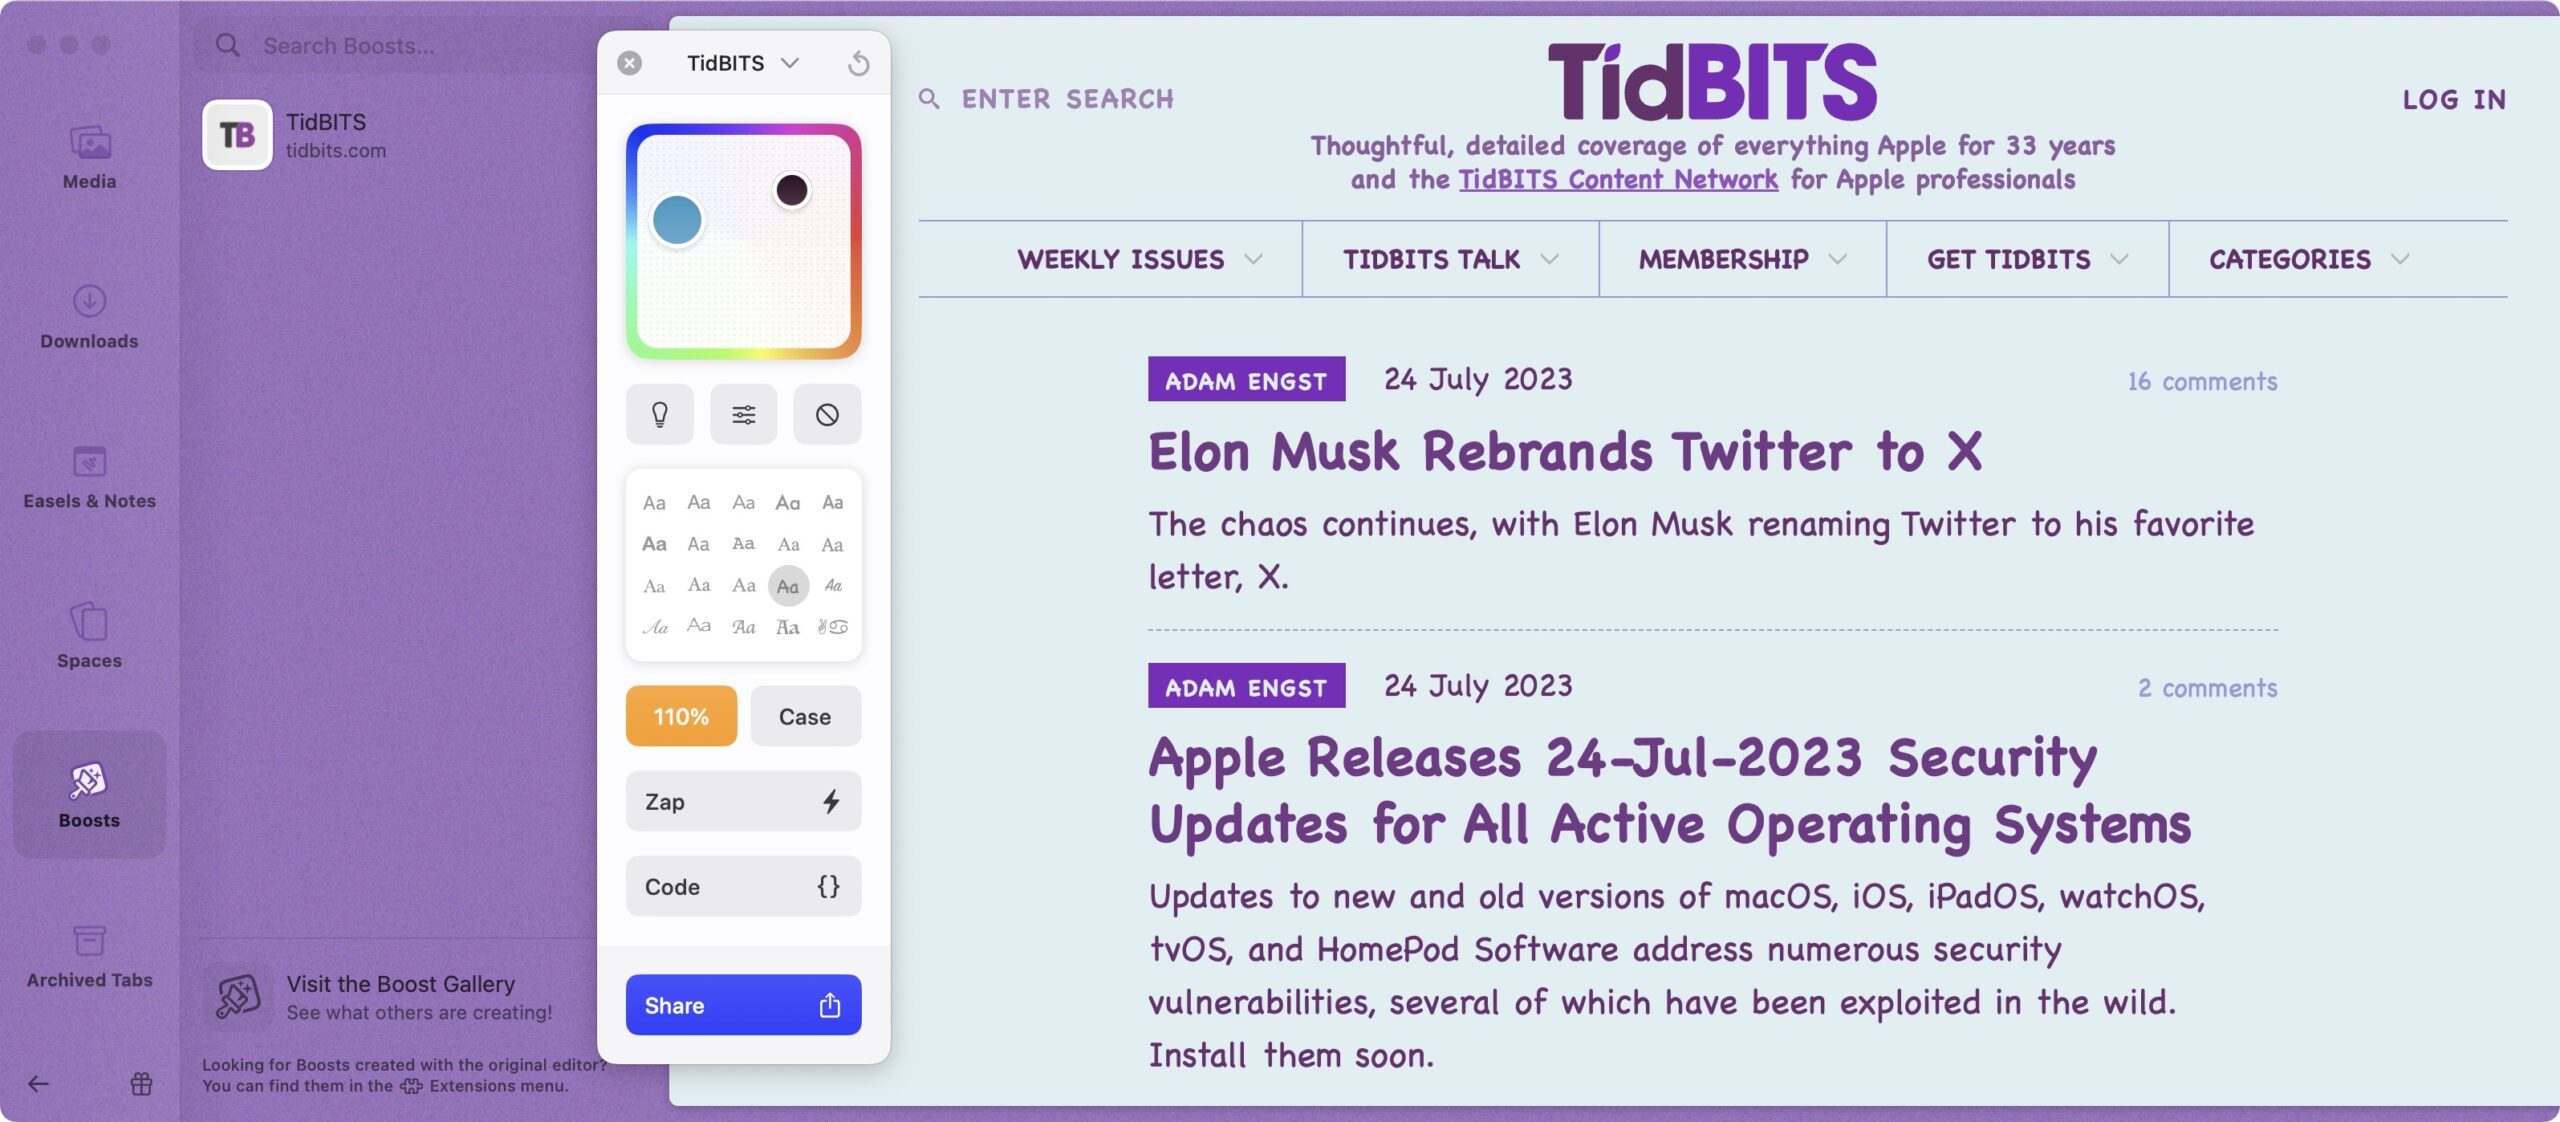 TidBITS-website gerestyled met een Arc Boost